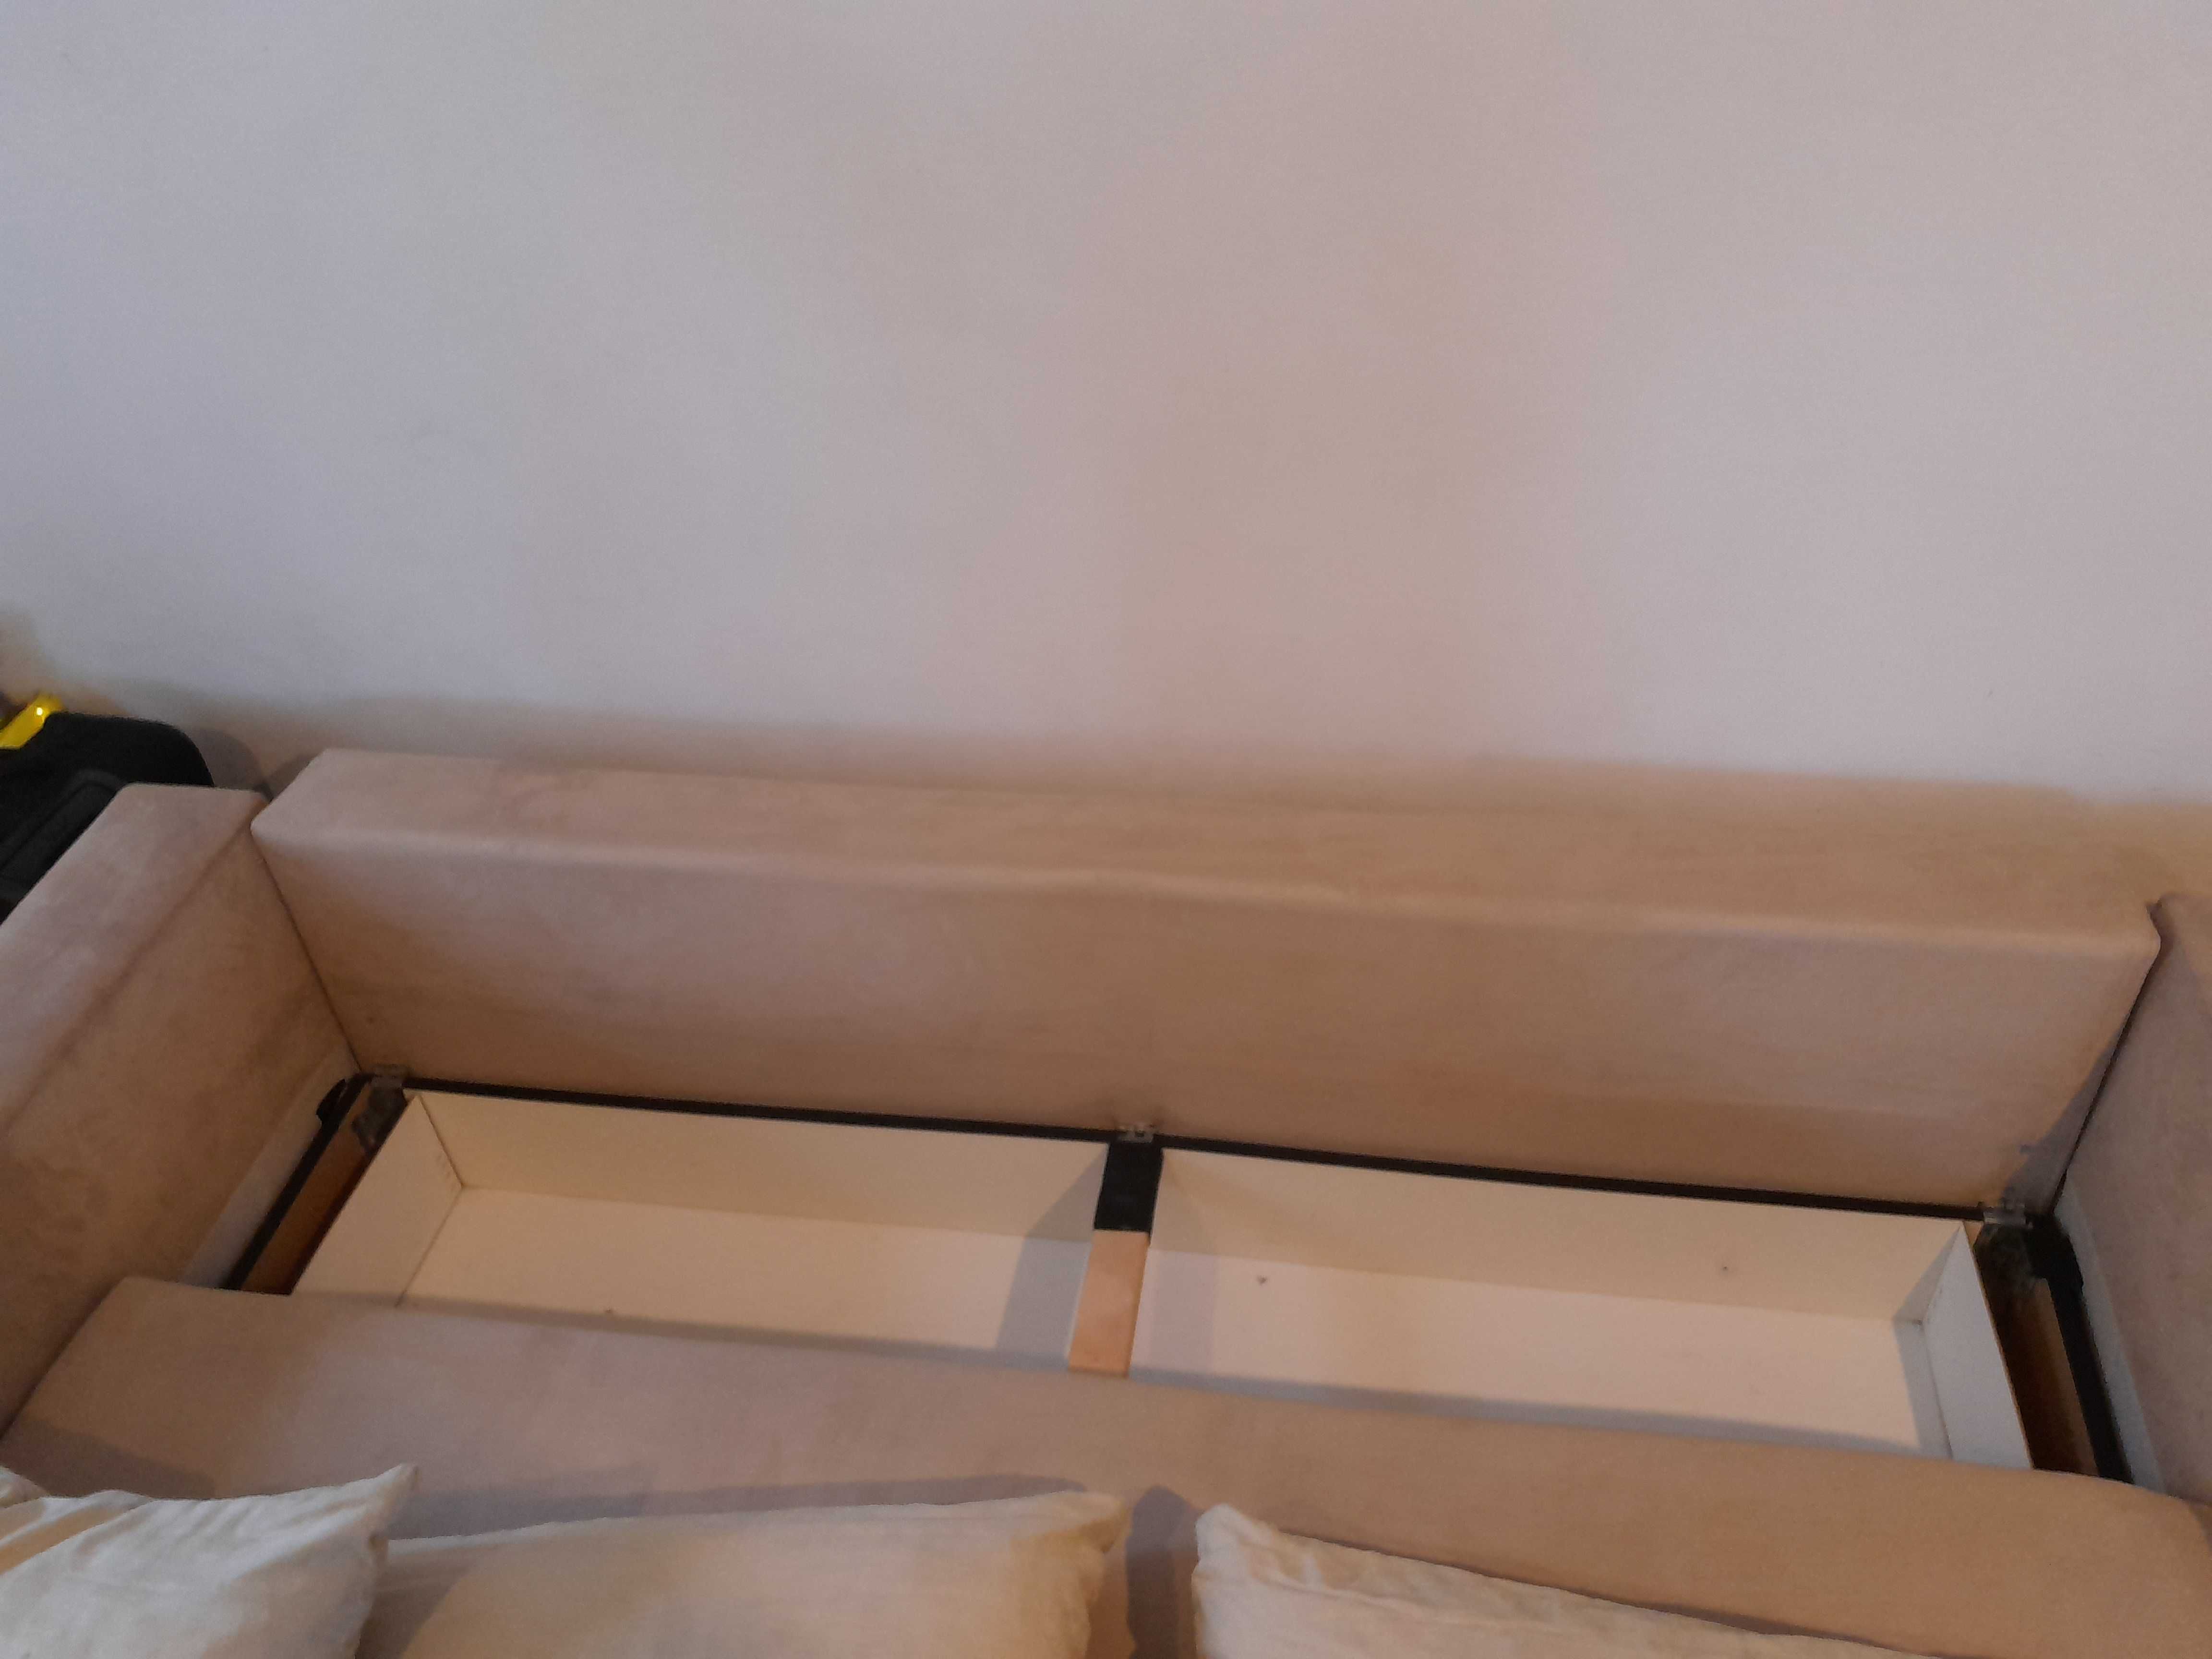 Łóżko zestaw wypoczynkowy sofa kanapa funkcja spania fotel pufa BRW